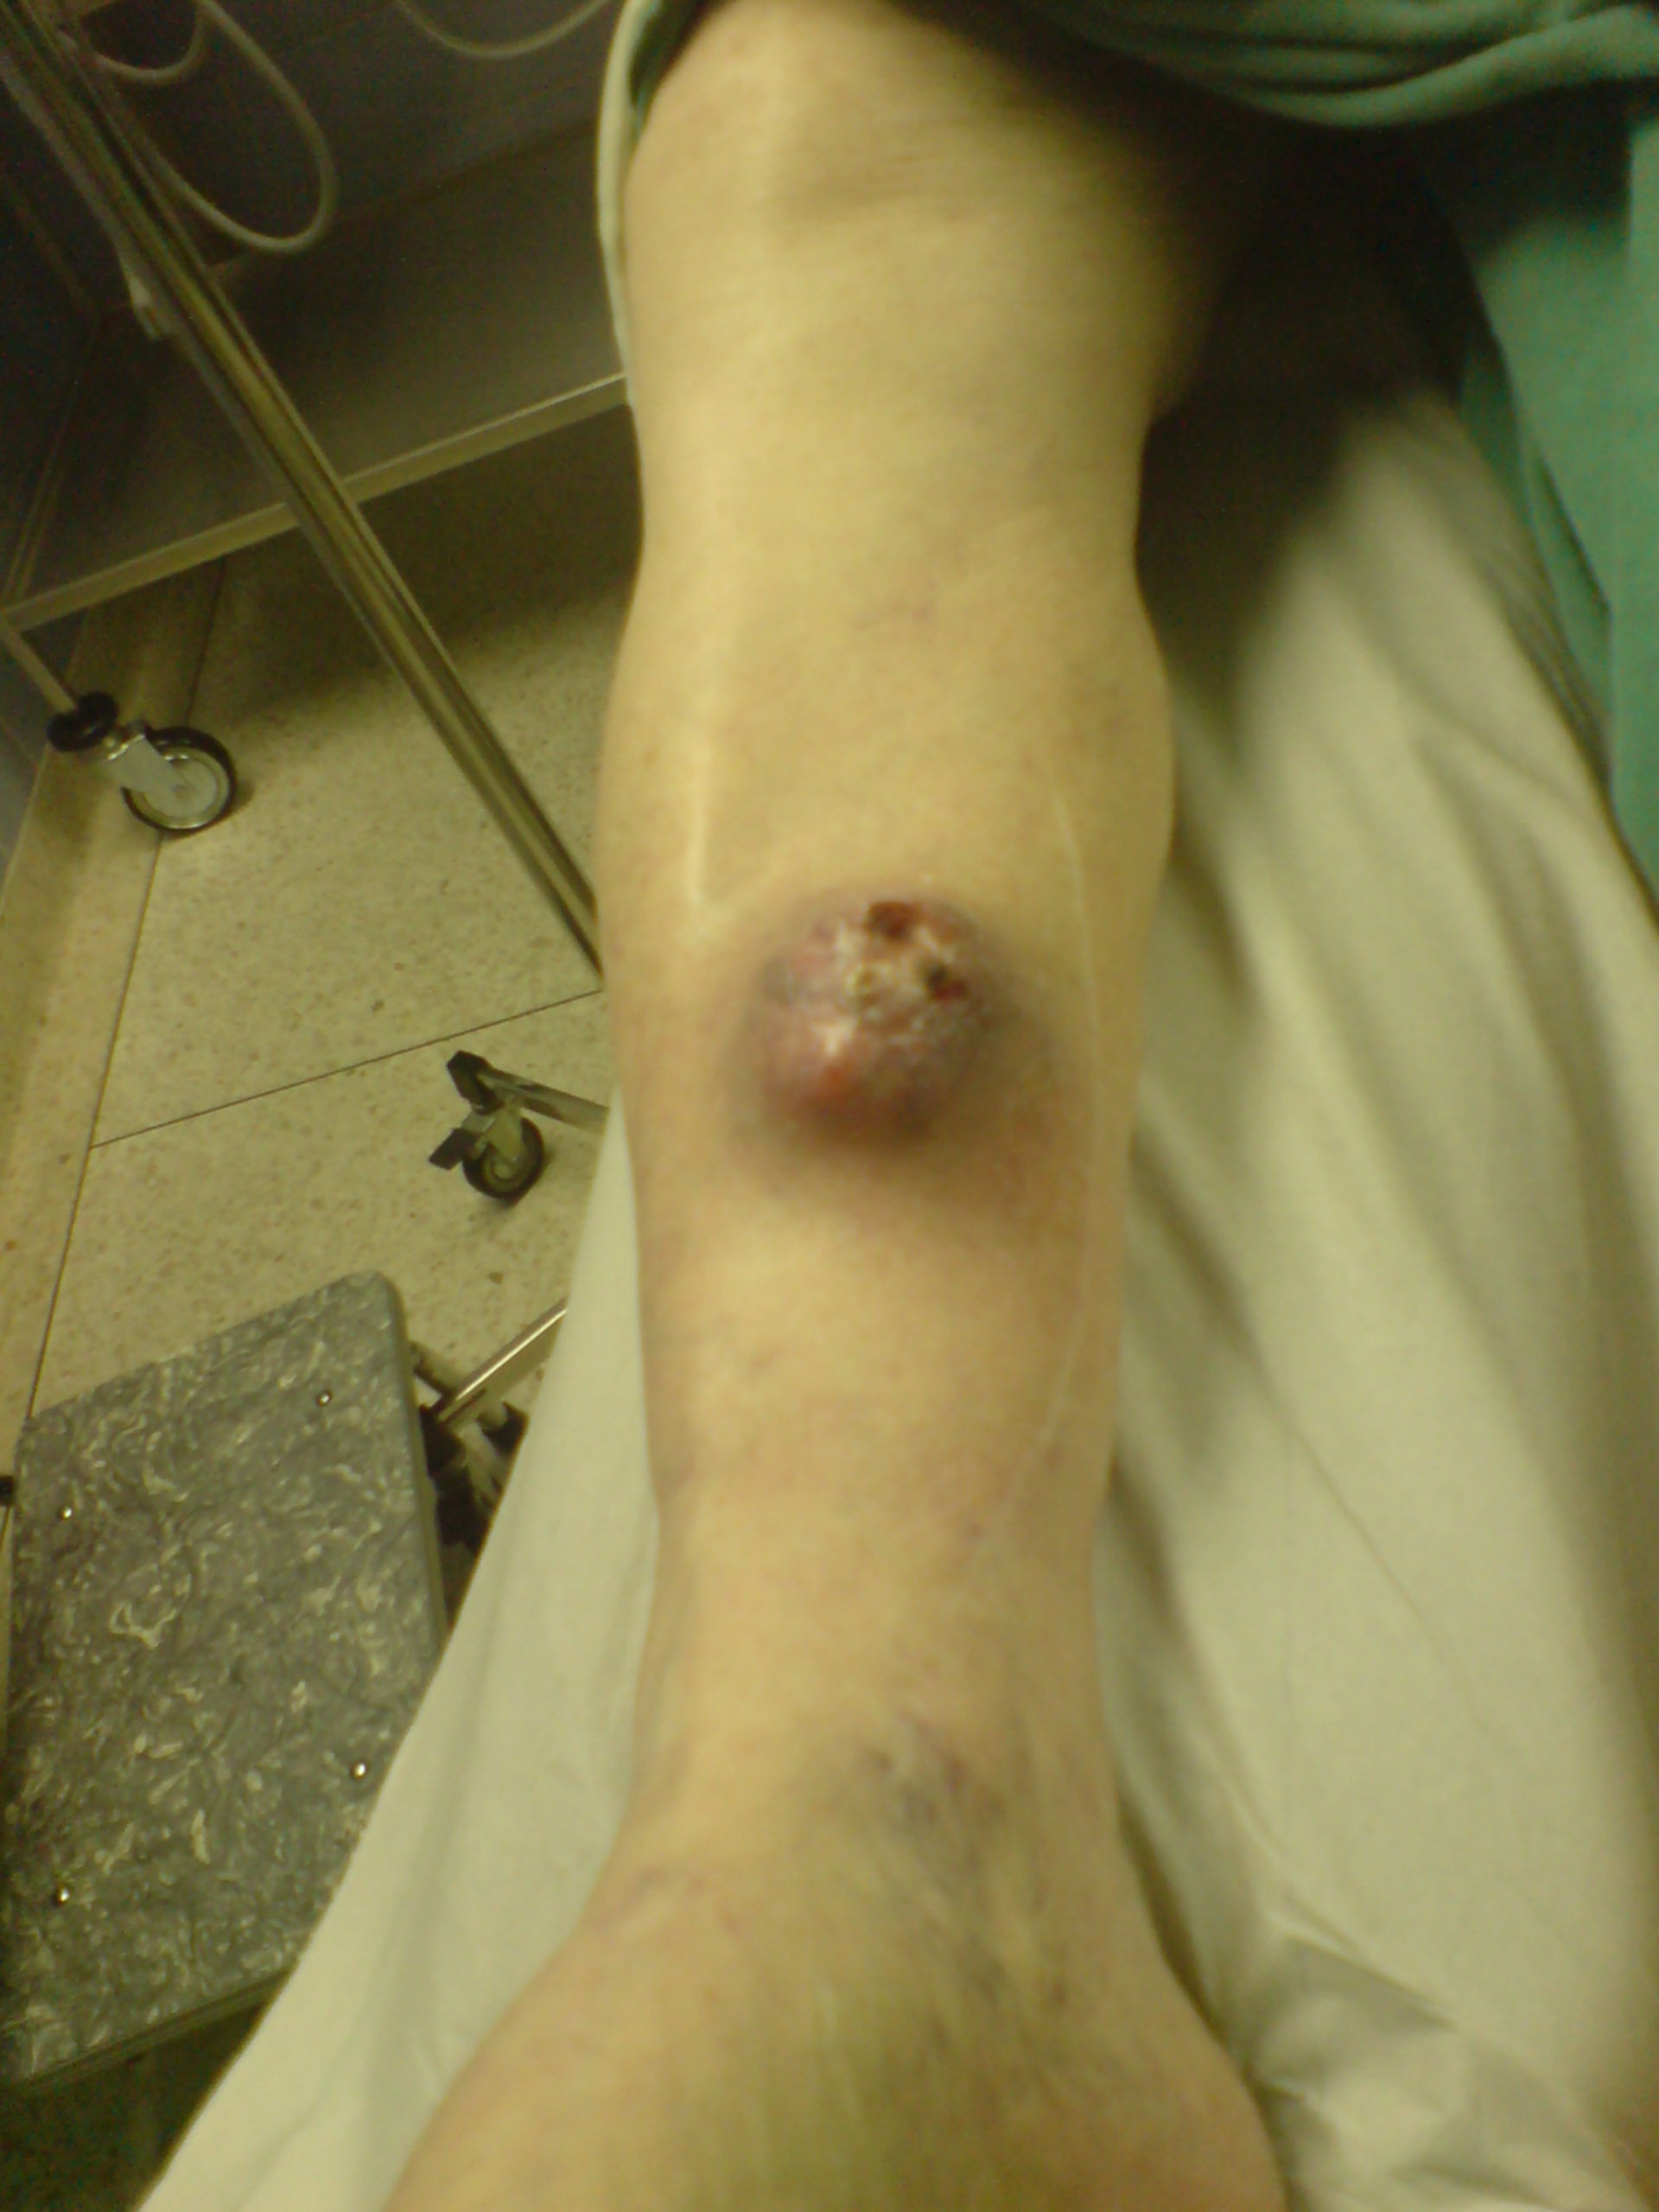 Malign histiocytoma on lower leg